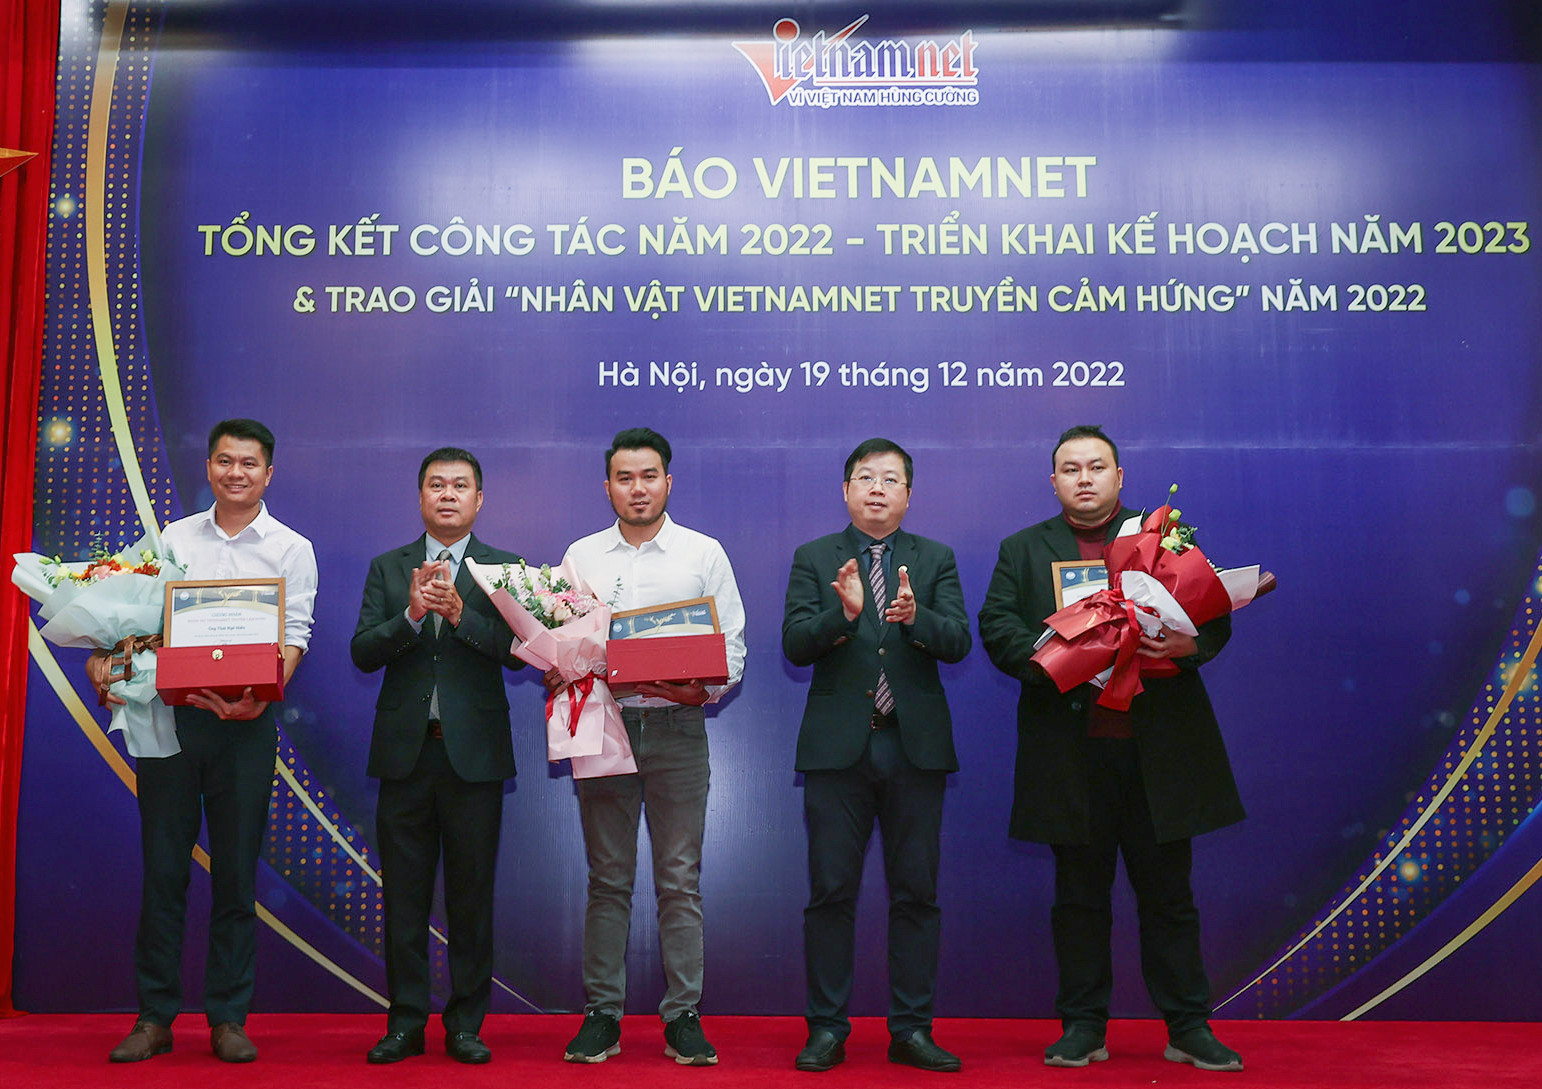 Giao lưu nhân vật VietNamNet truyền cảm hứng